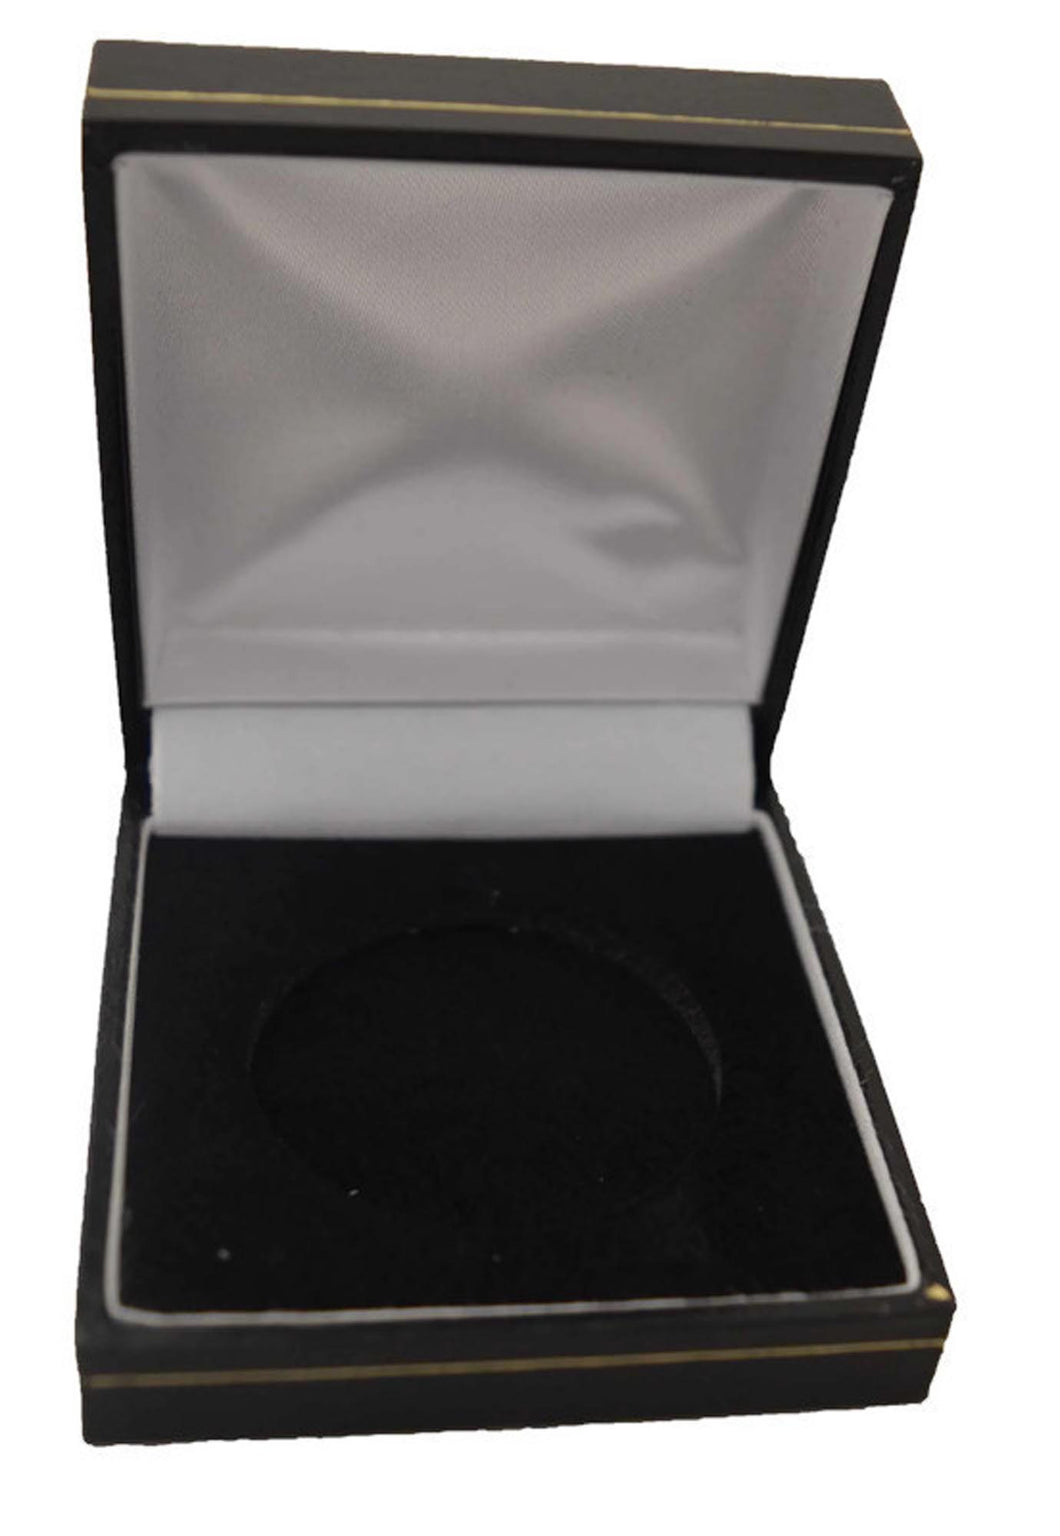 Padded Black Coin storage box for a crown coin or Britannia coin